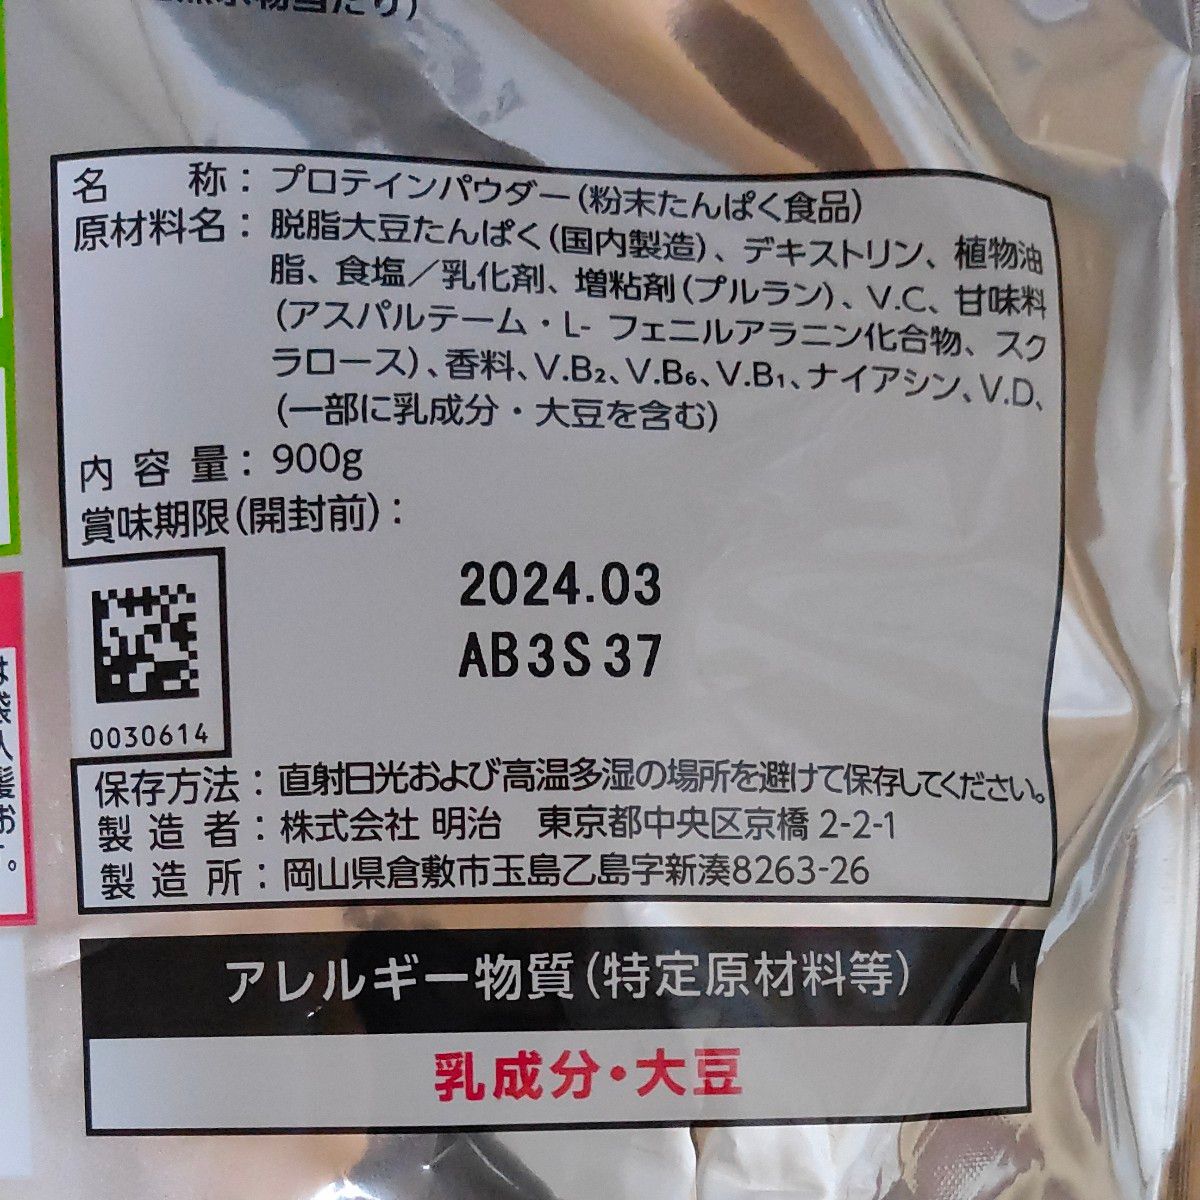 ザバス ソイプロテイン100 ソイミルク風味 900g × 1袋